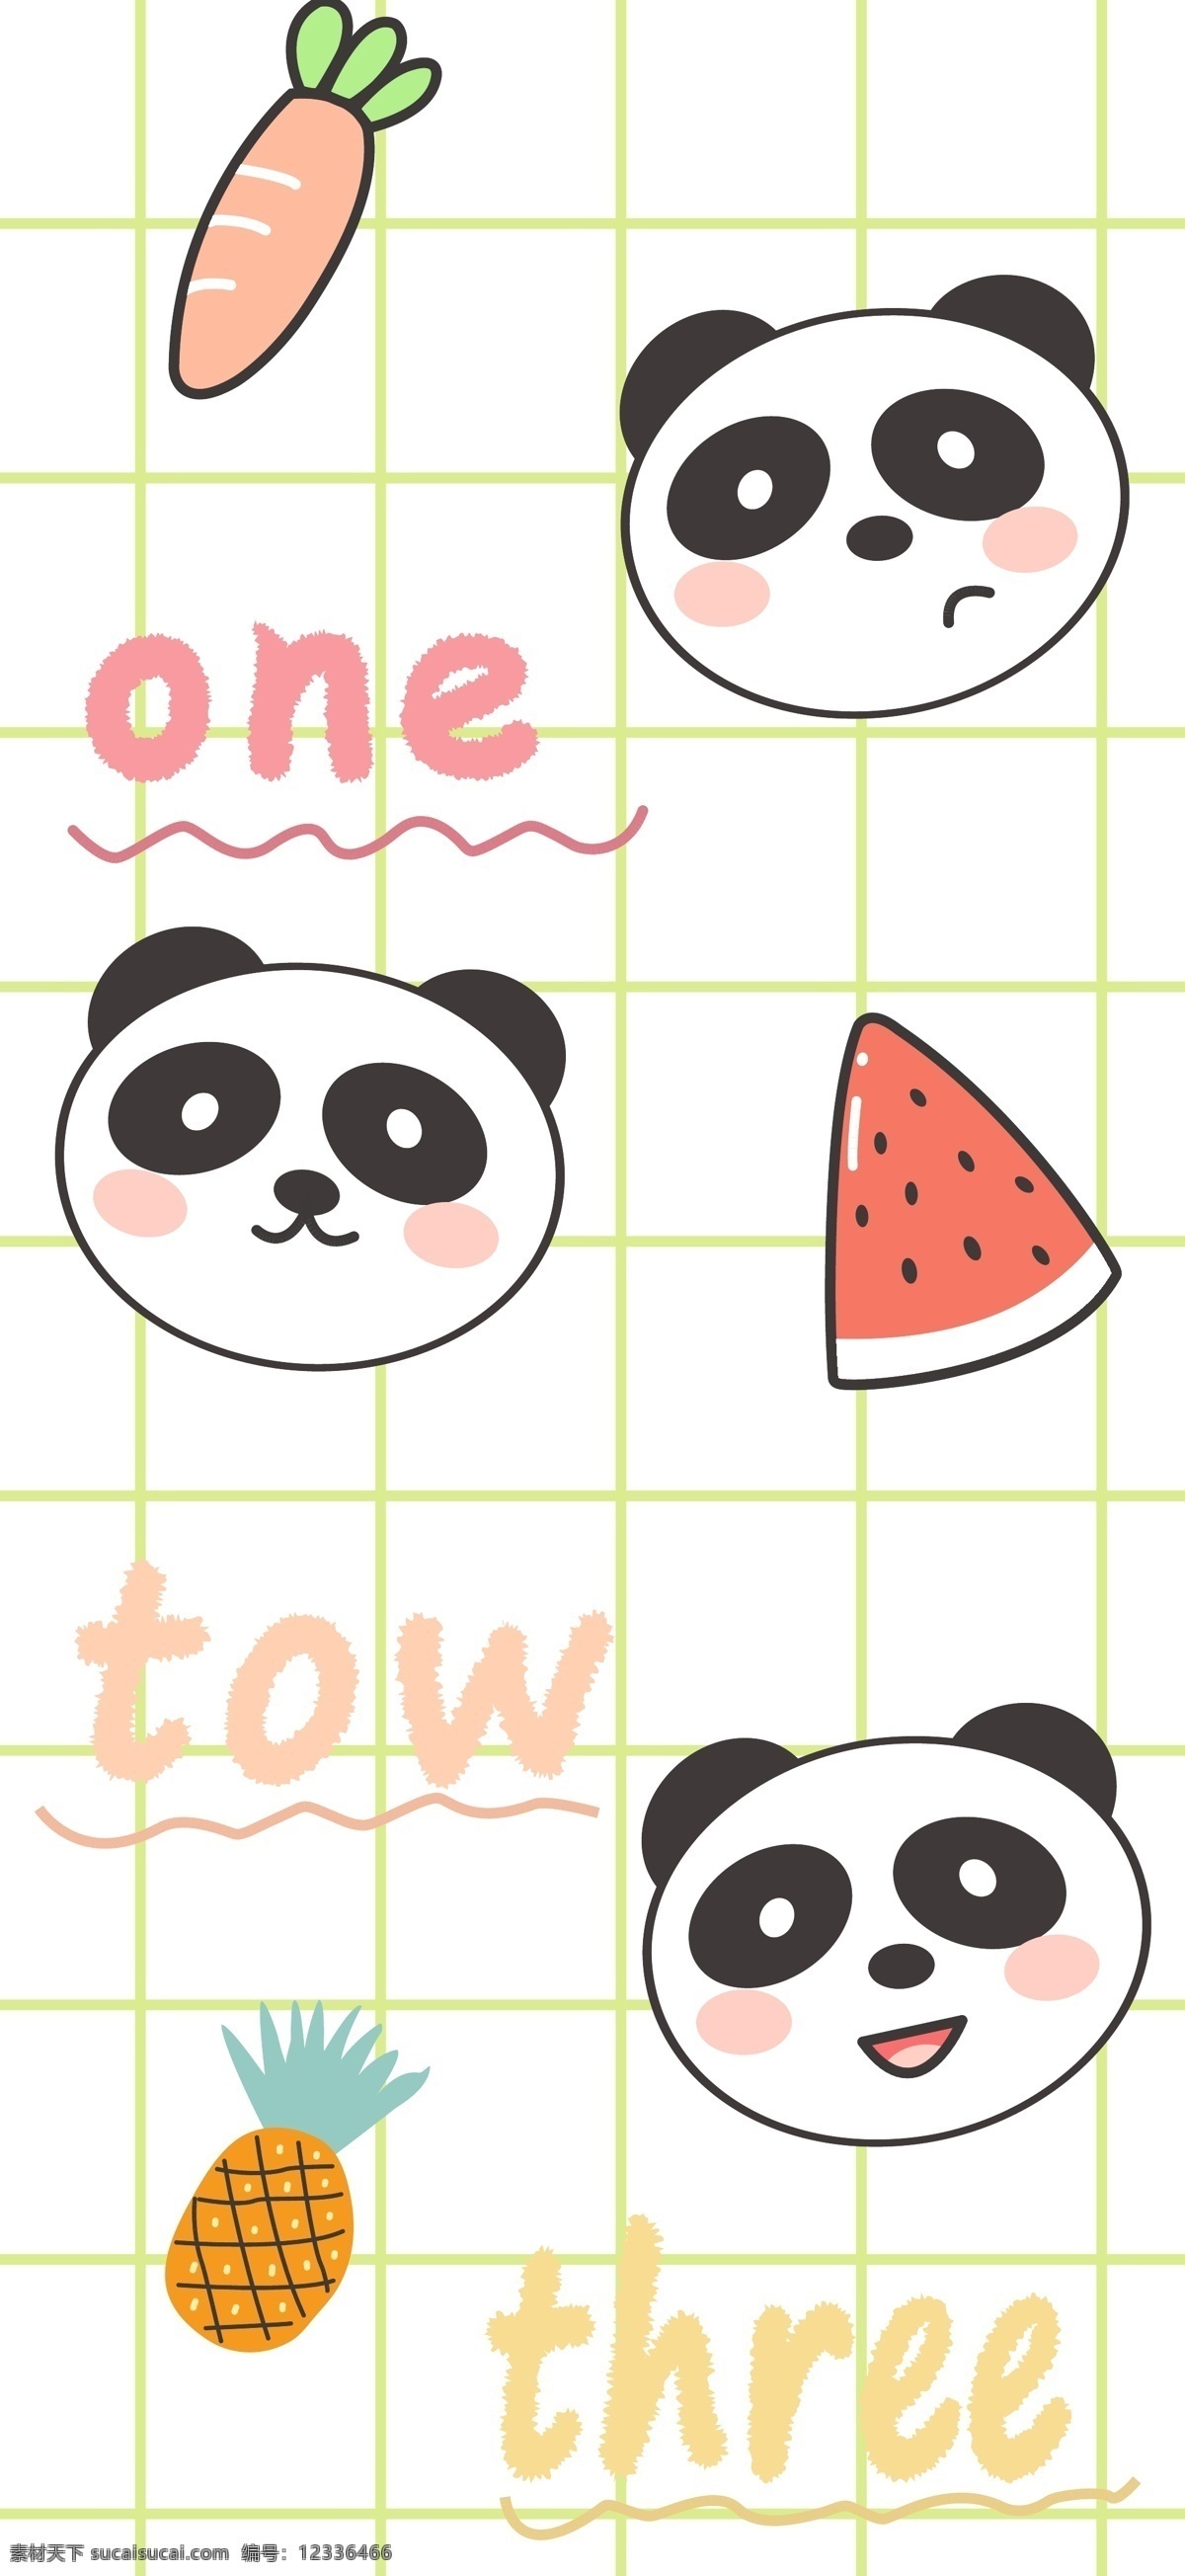 卡通熊猫 熊猫 卡通小熊 卡通水果 手机壳图案 本本图案 笔袋图案 可爱熊猫 卡通胡萝卜 卡通西瓜 卡通菠萝